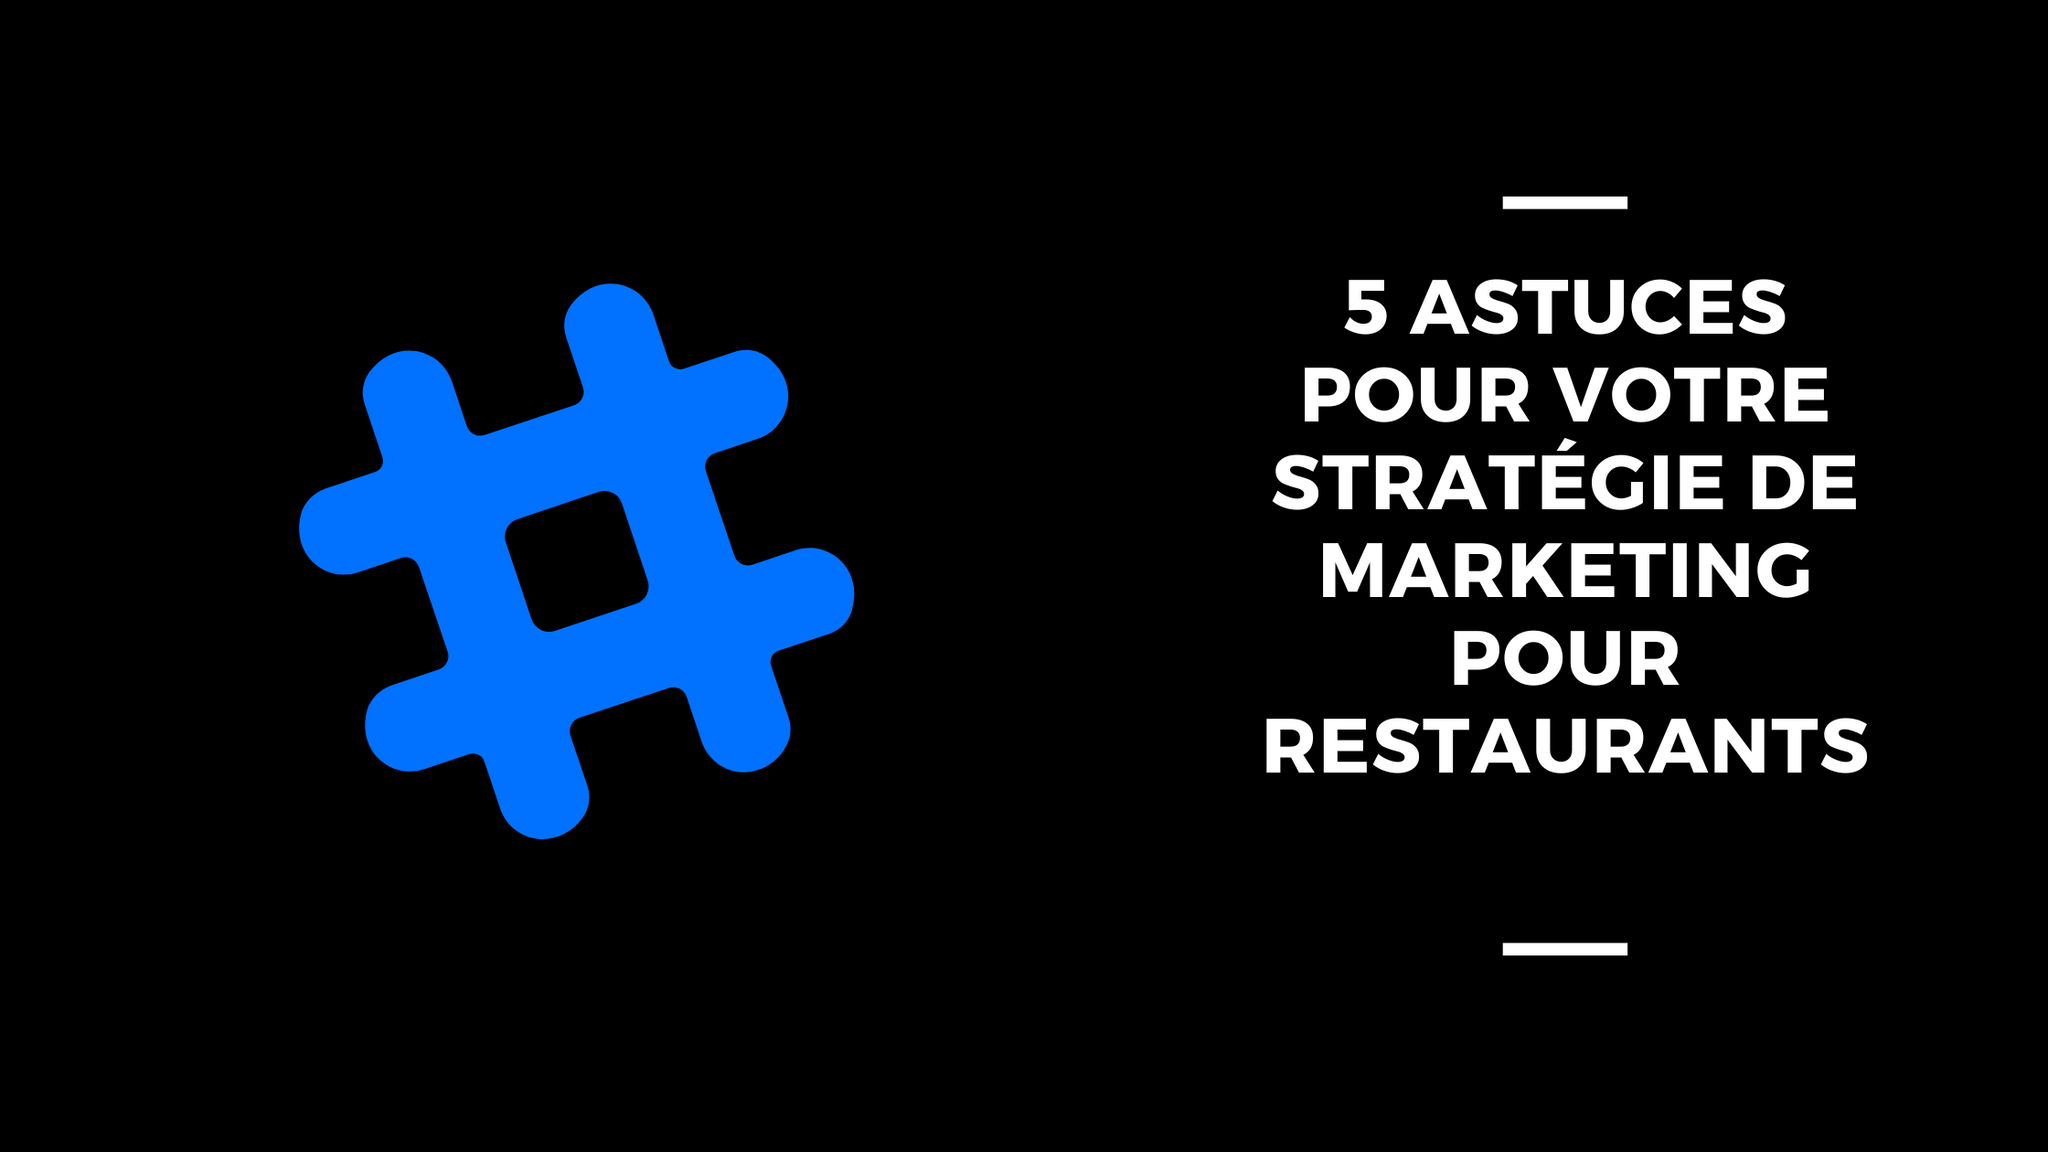 5 Astuces Pour Votre Stratégie De Marketing Pour Restaurants